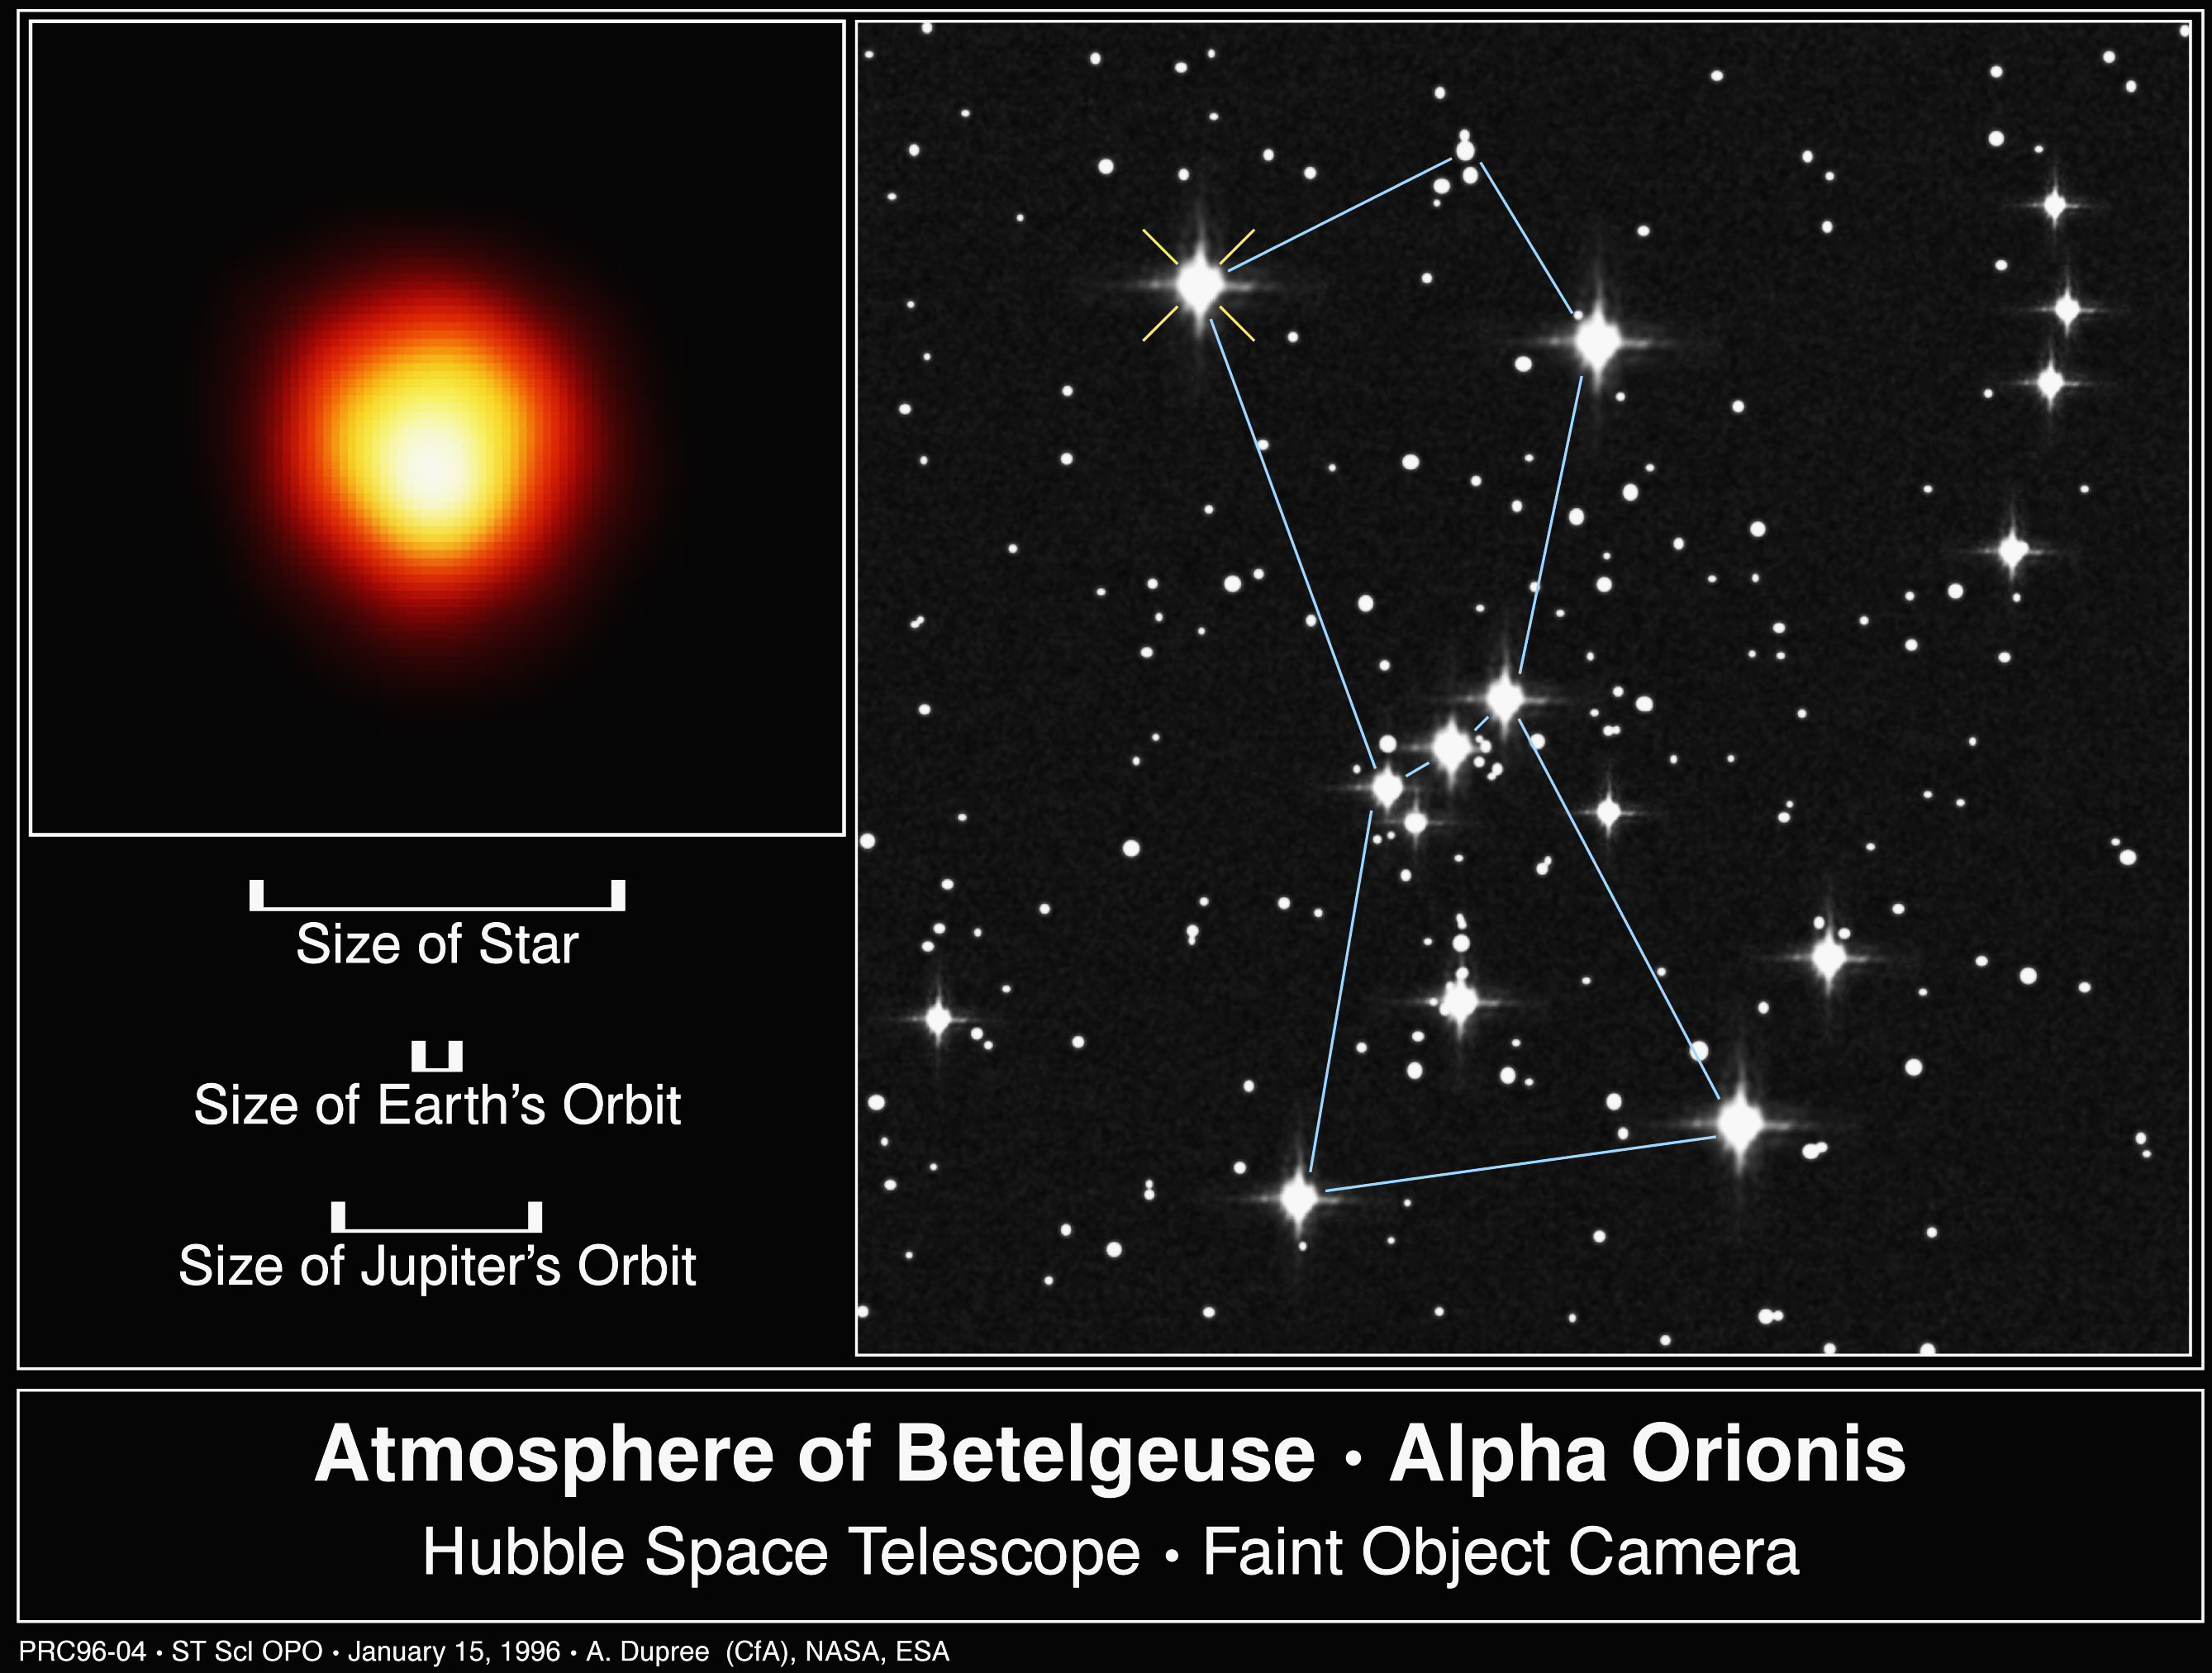 Betelgeuse es una enorme estrella ubicada en la constelación de Orión